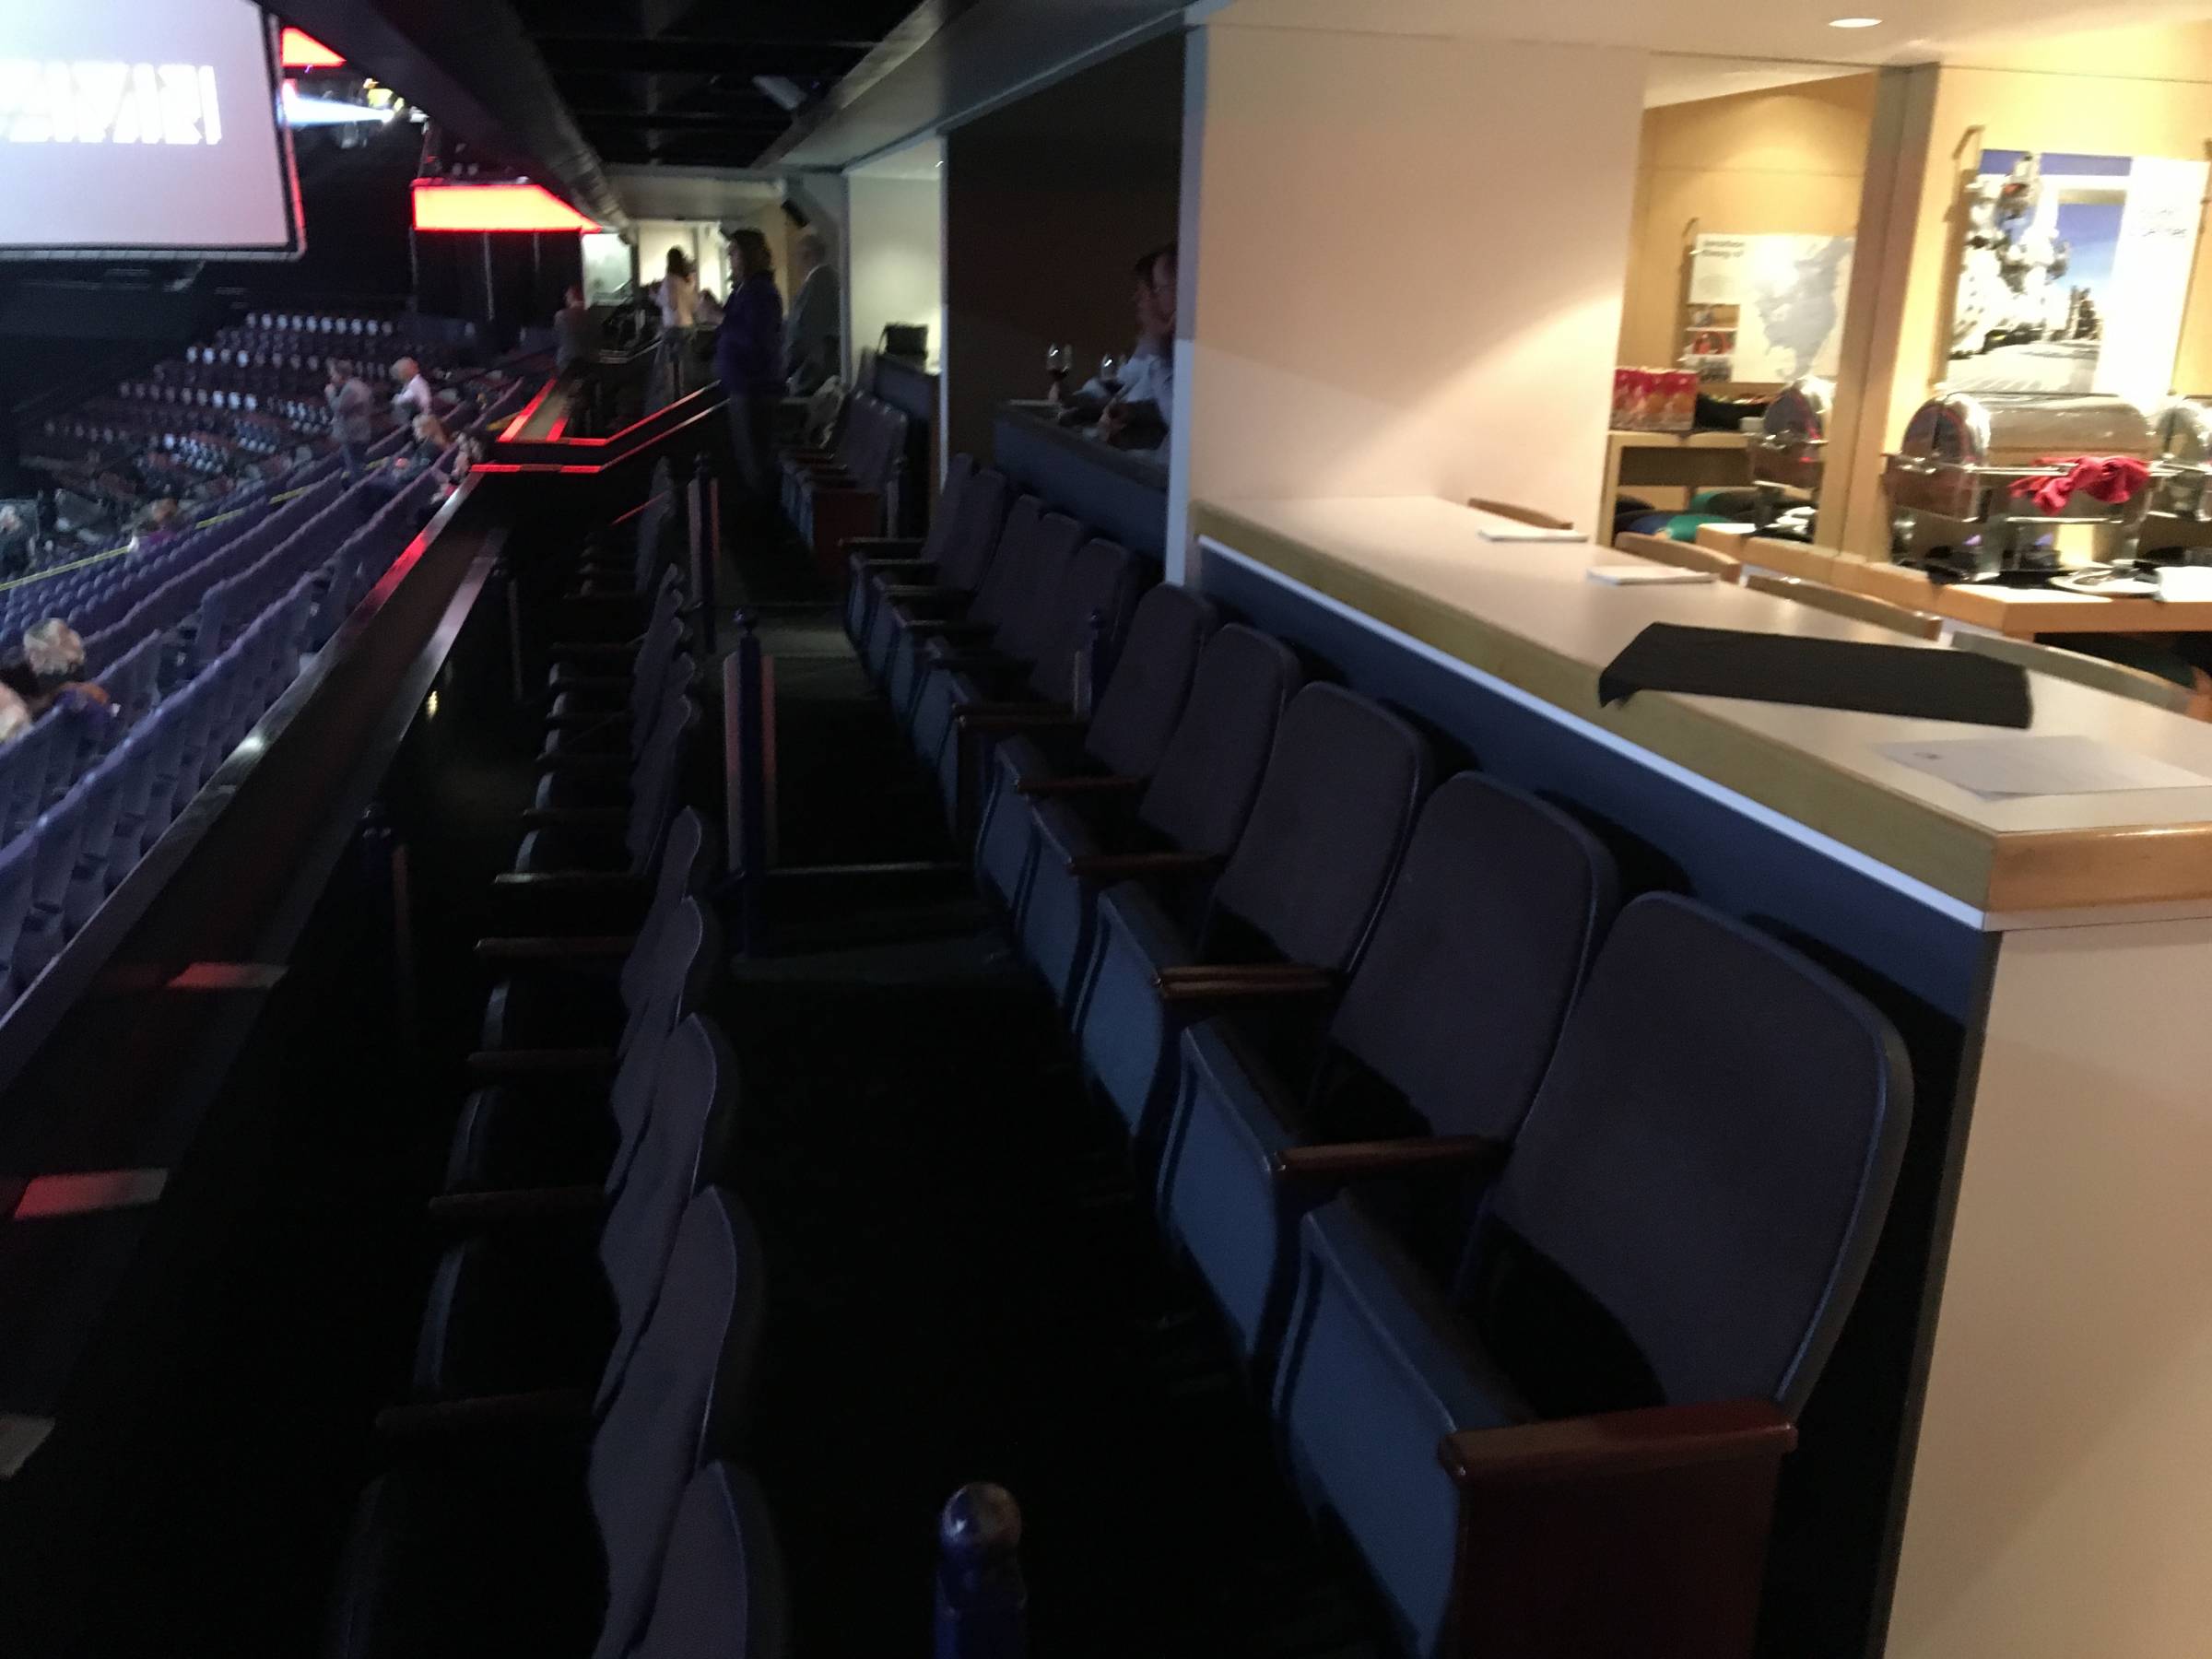 Executive Suites at Scotiabank Saddledome